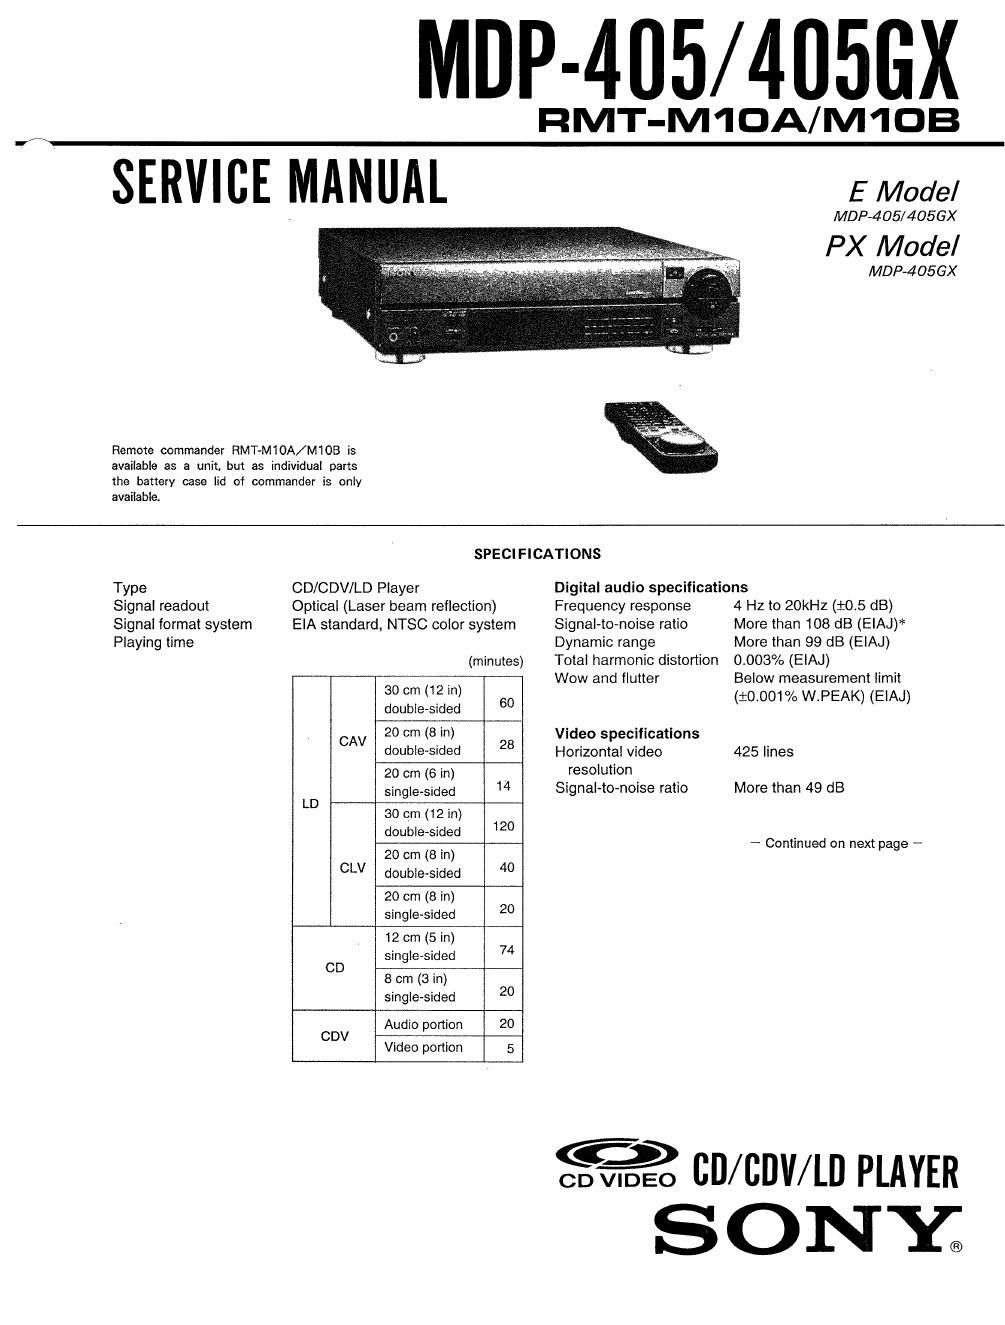 sony mdp 405 service manual